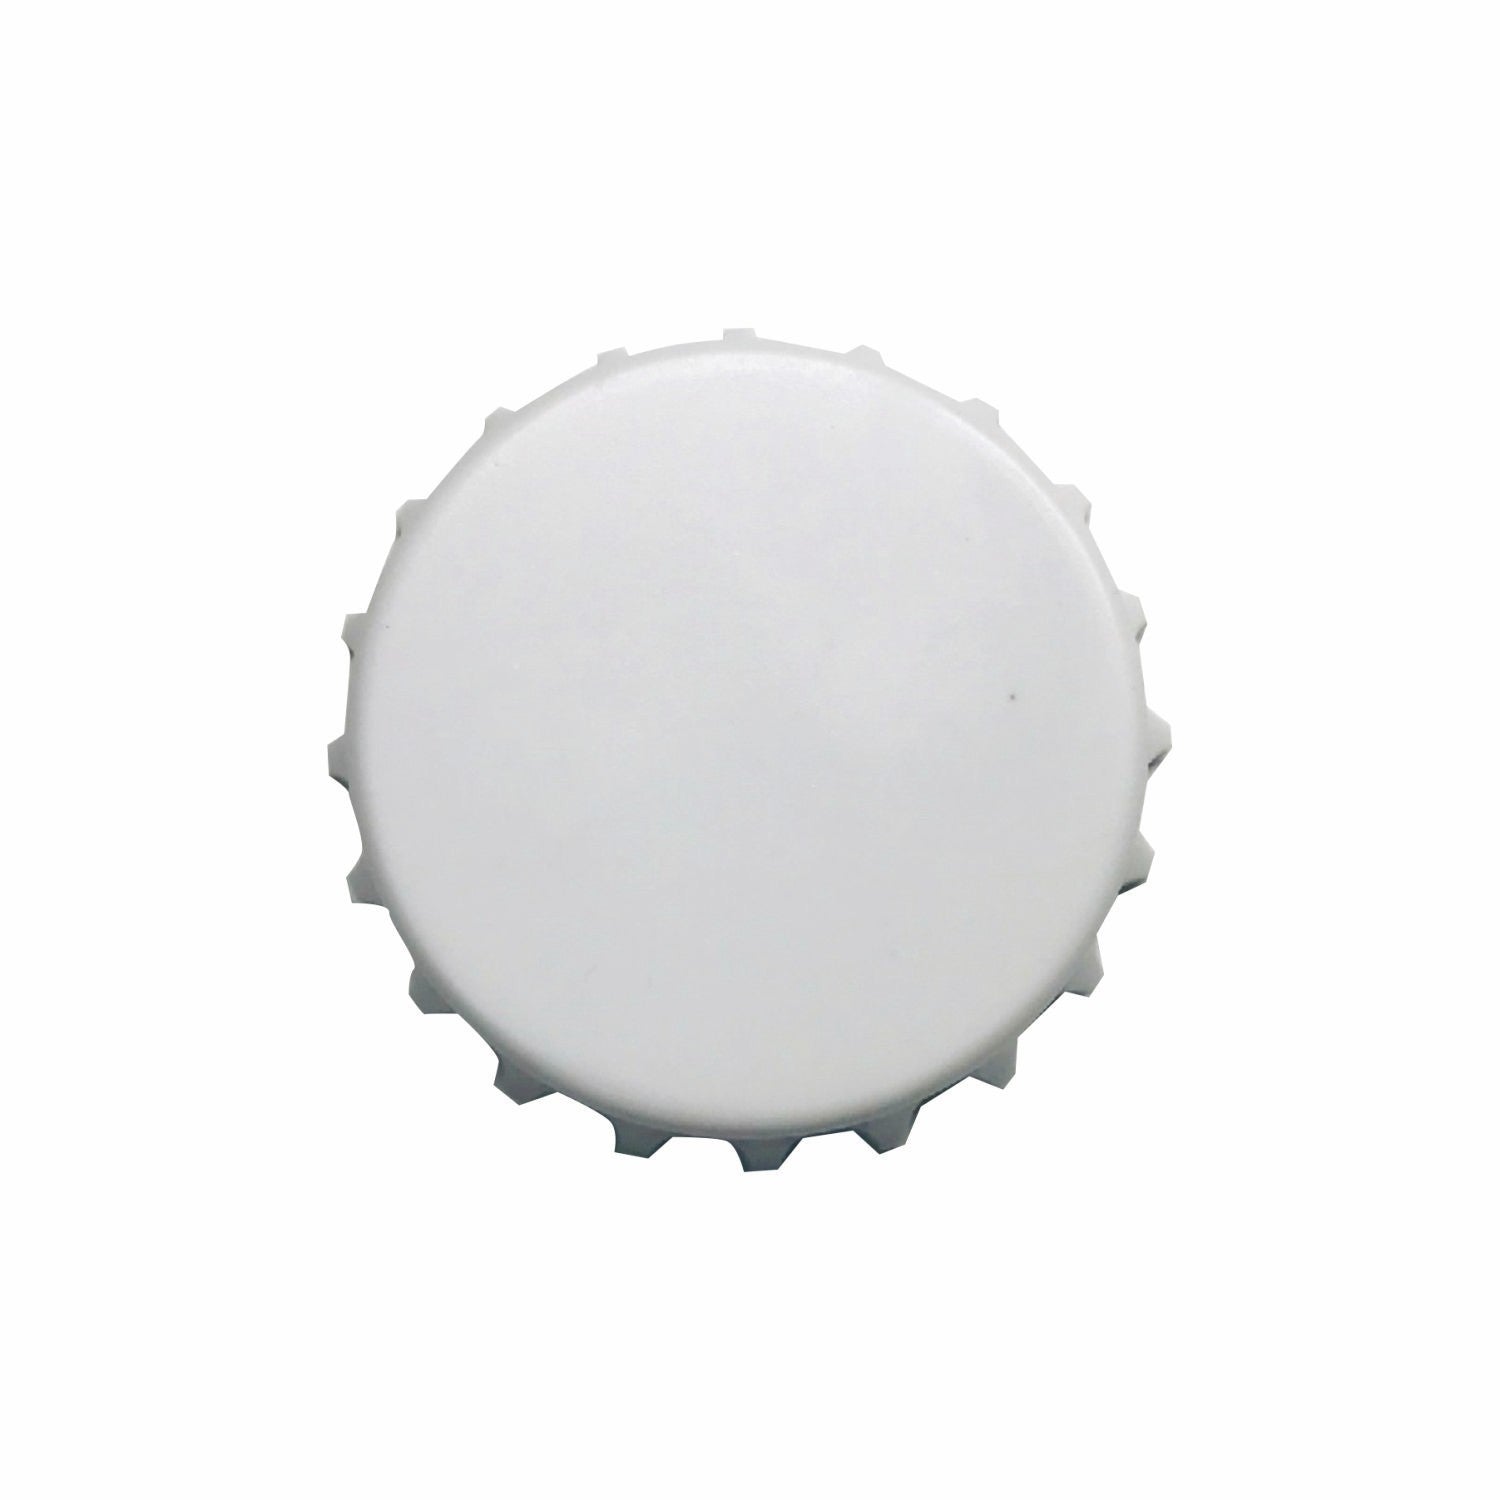 Bottle Opener Coaster, Magnetic Back, Beer Cap Design (3-5 Days)